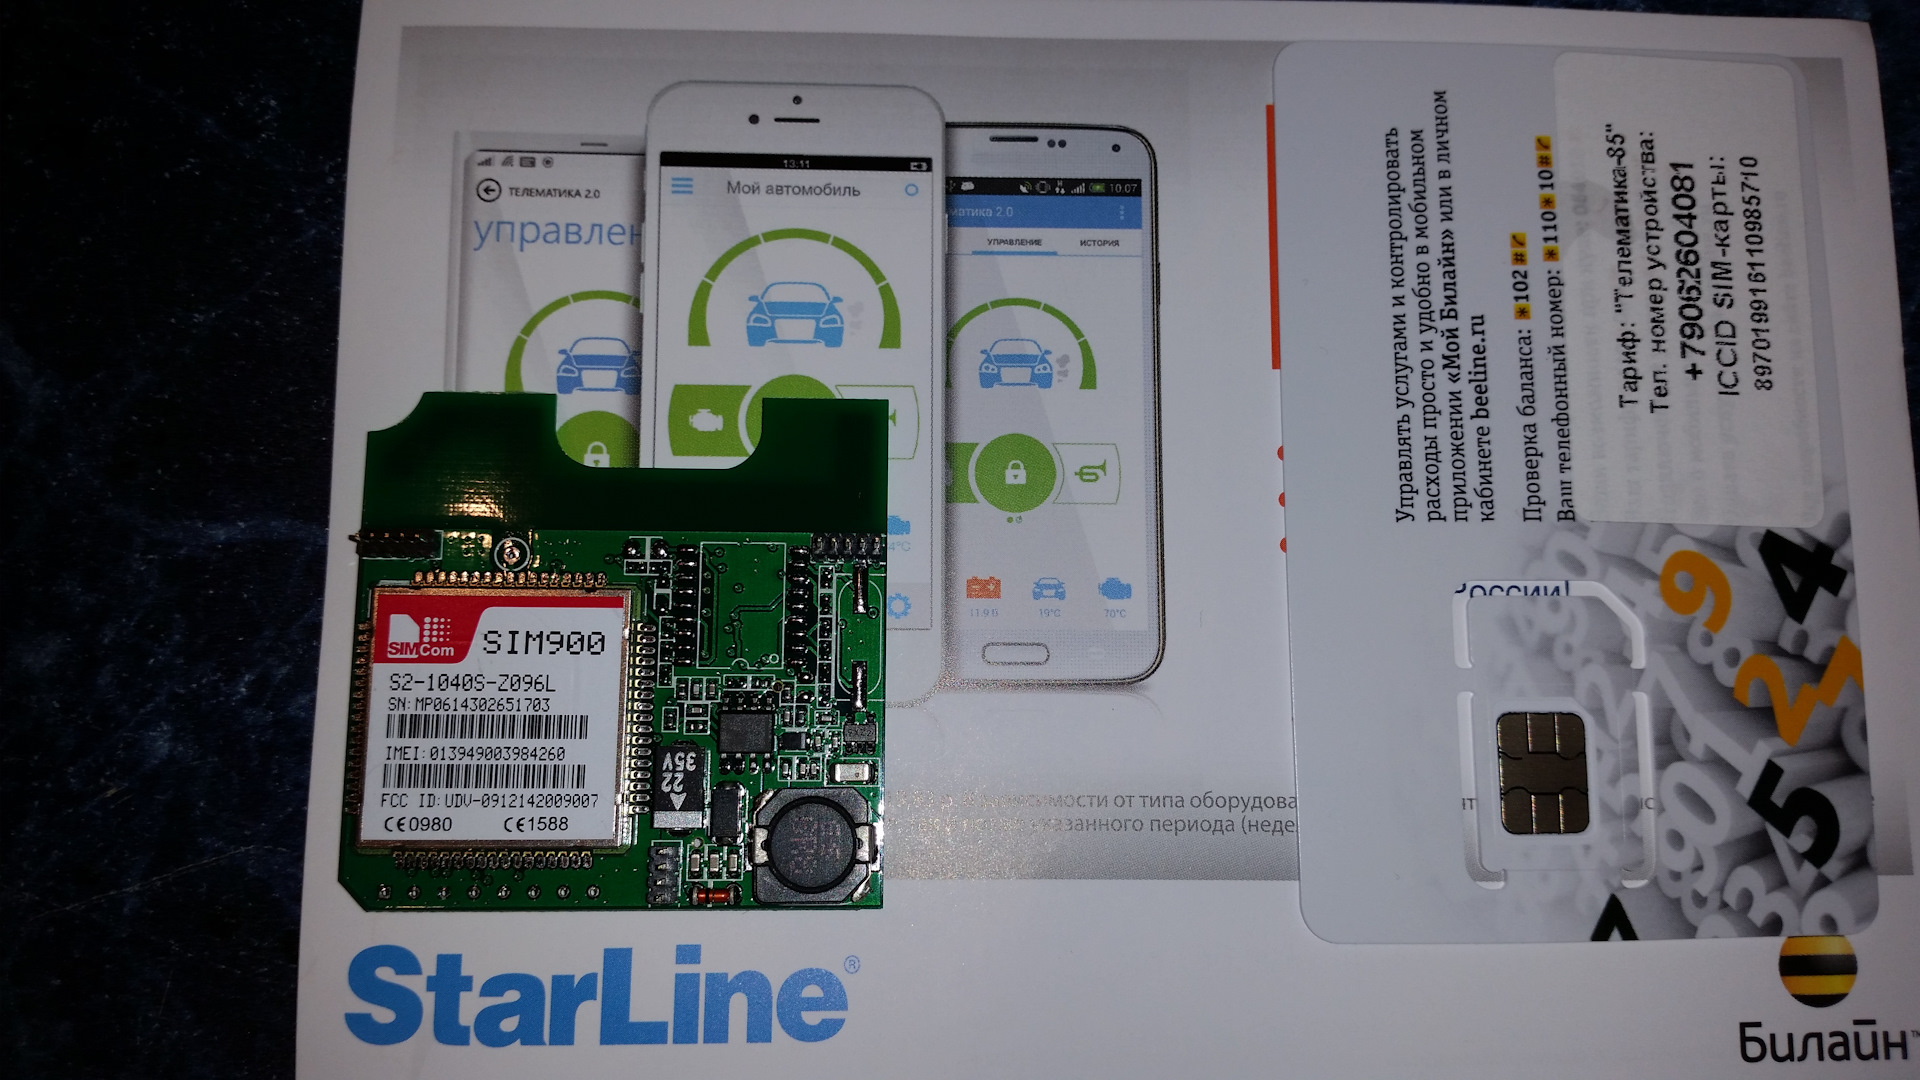 Купить модуль старлайн а93. GSM модуль STARLINE a93. GPS модуль для STARLINE a93. Сигнализация старлайн а93 с GSM модулем. ЖСМ модуль для старлайн а93.